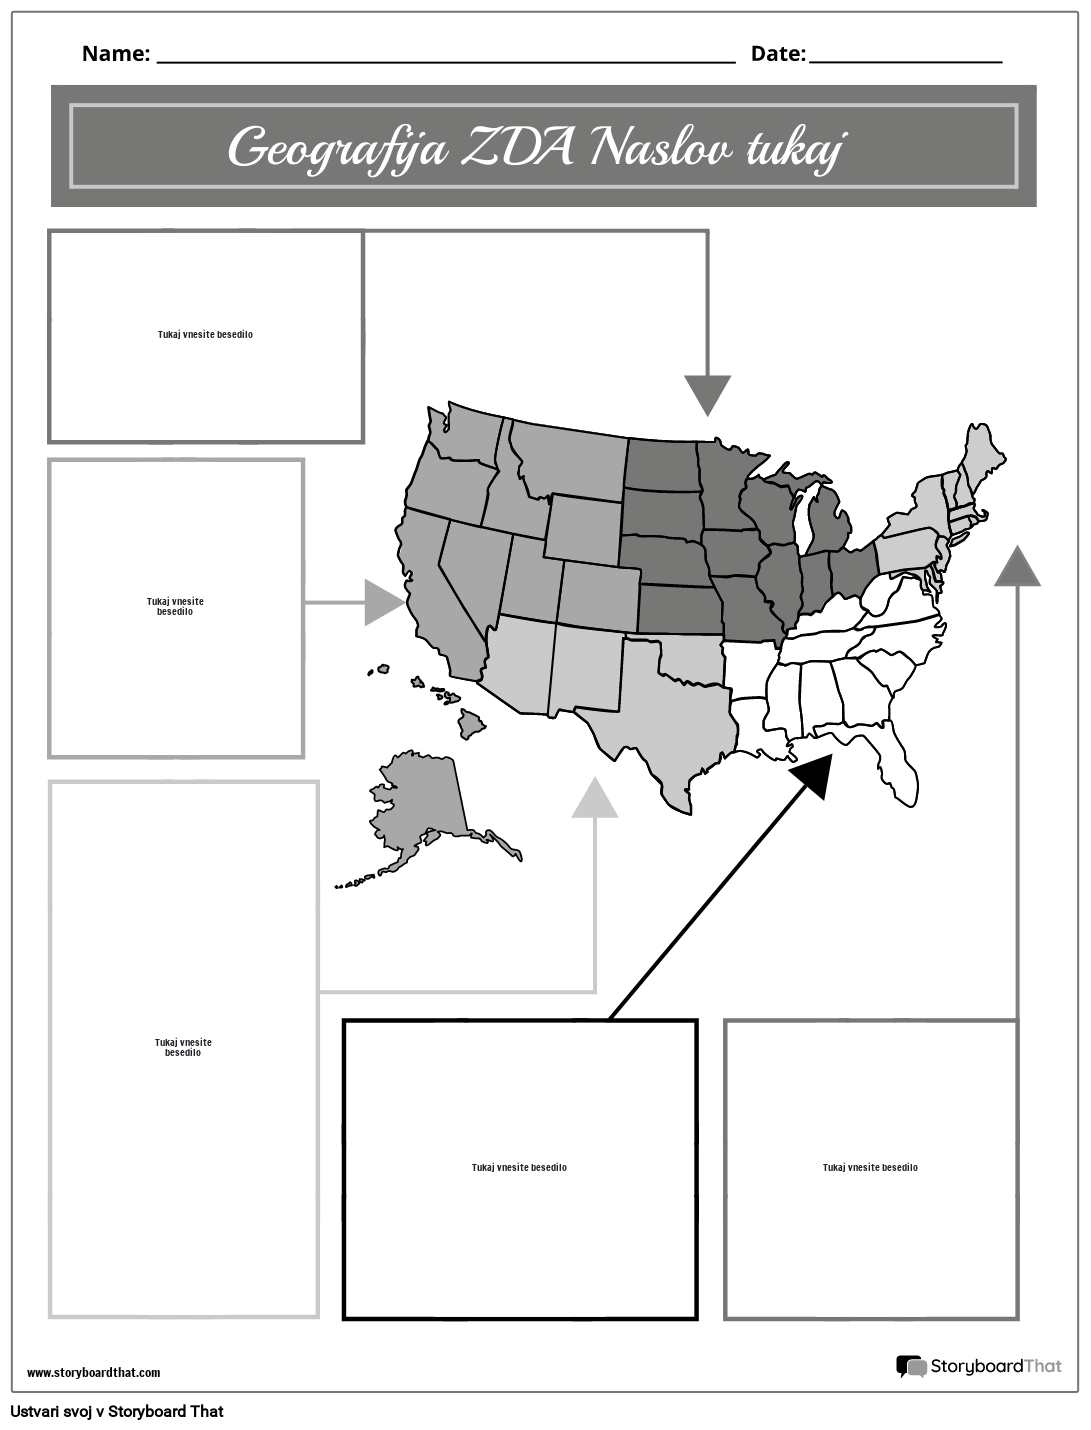 Črno-beli Geografski Portret ZDA 2